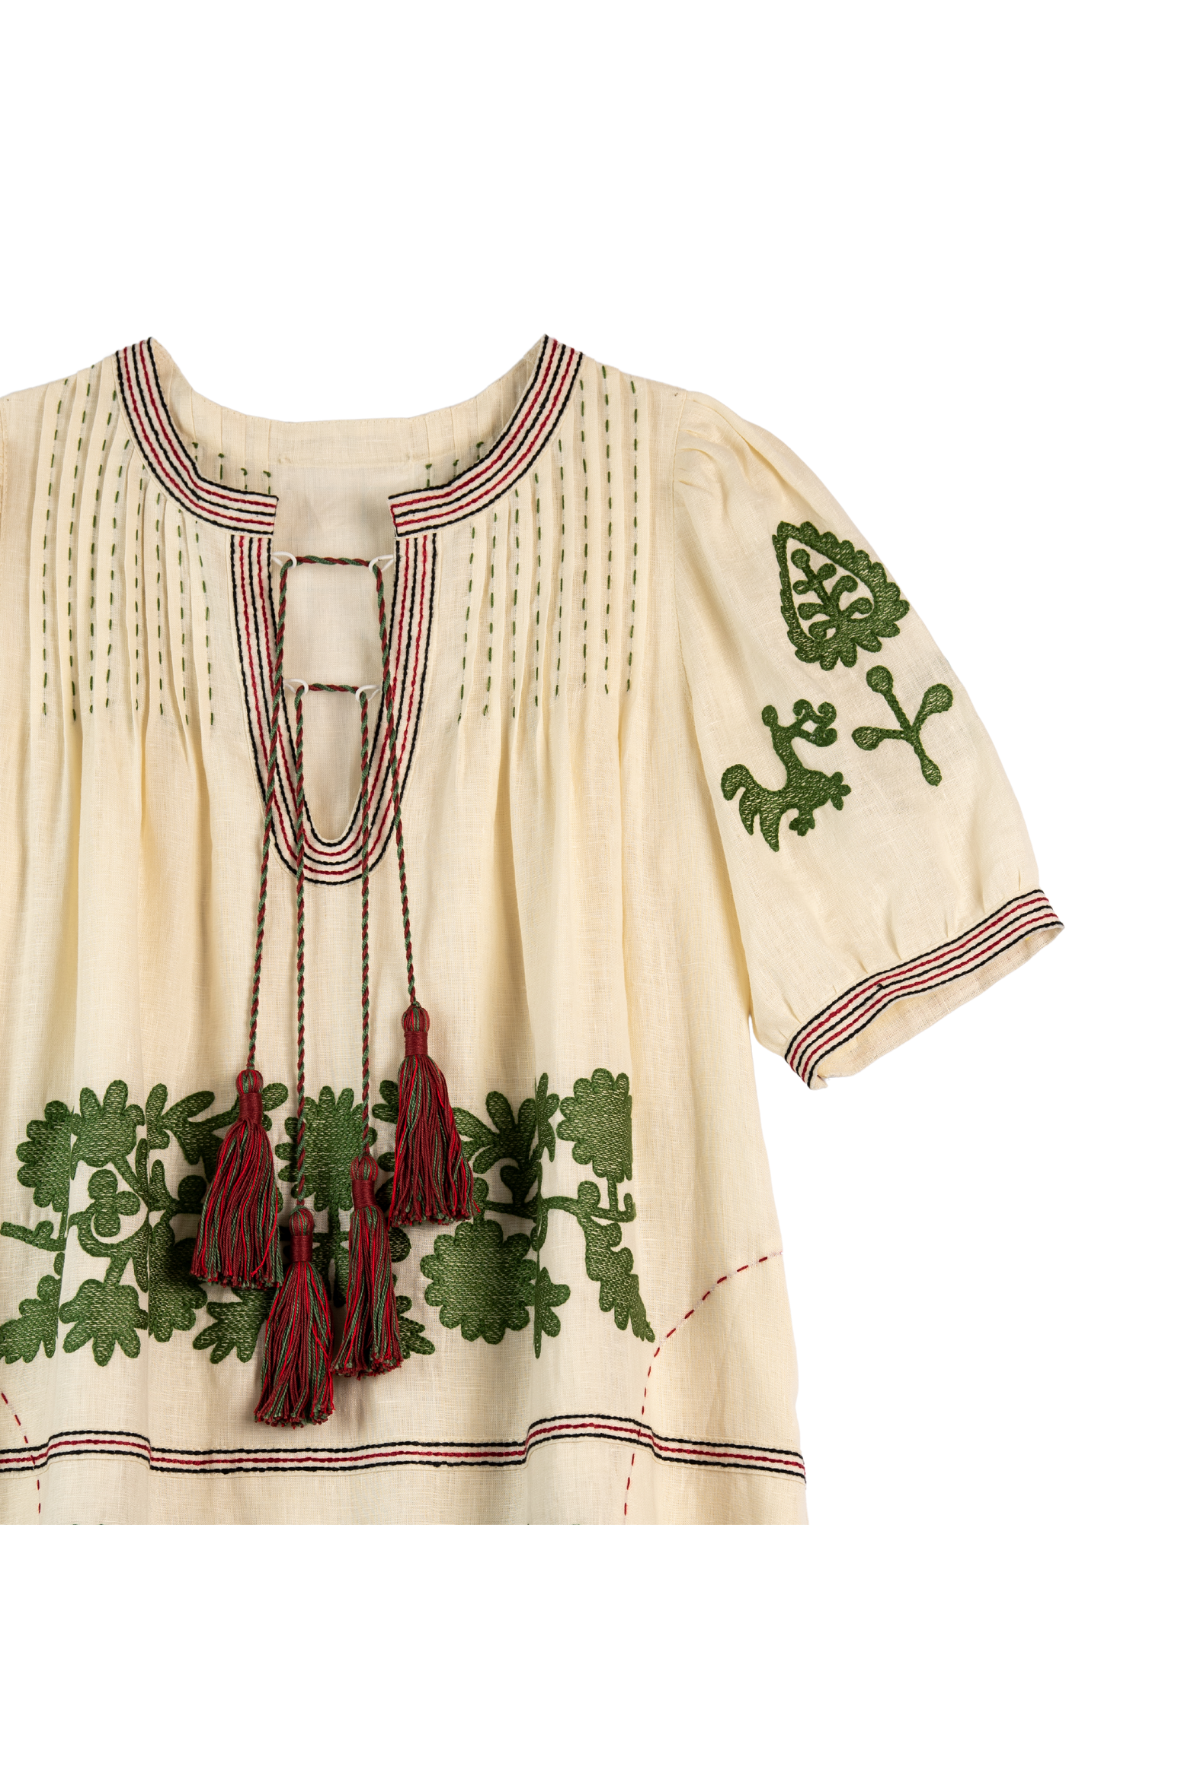 Natalia Ukrainian Embroidered Maxi Dress - Ivory, Olive by Larkin Lane